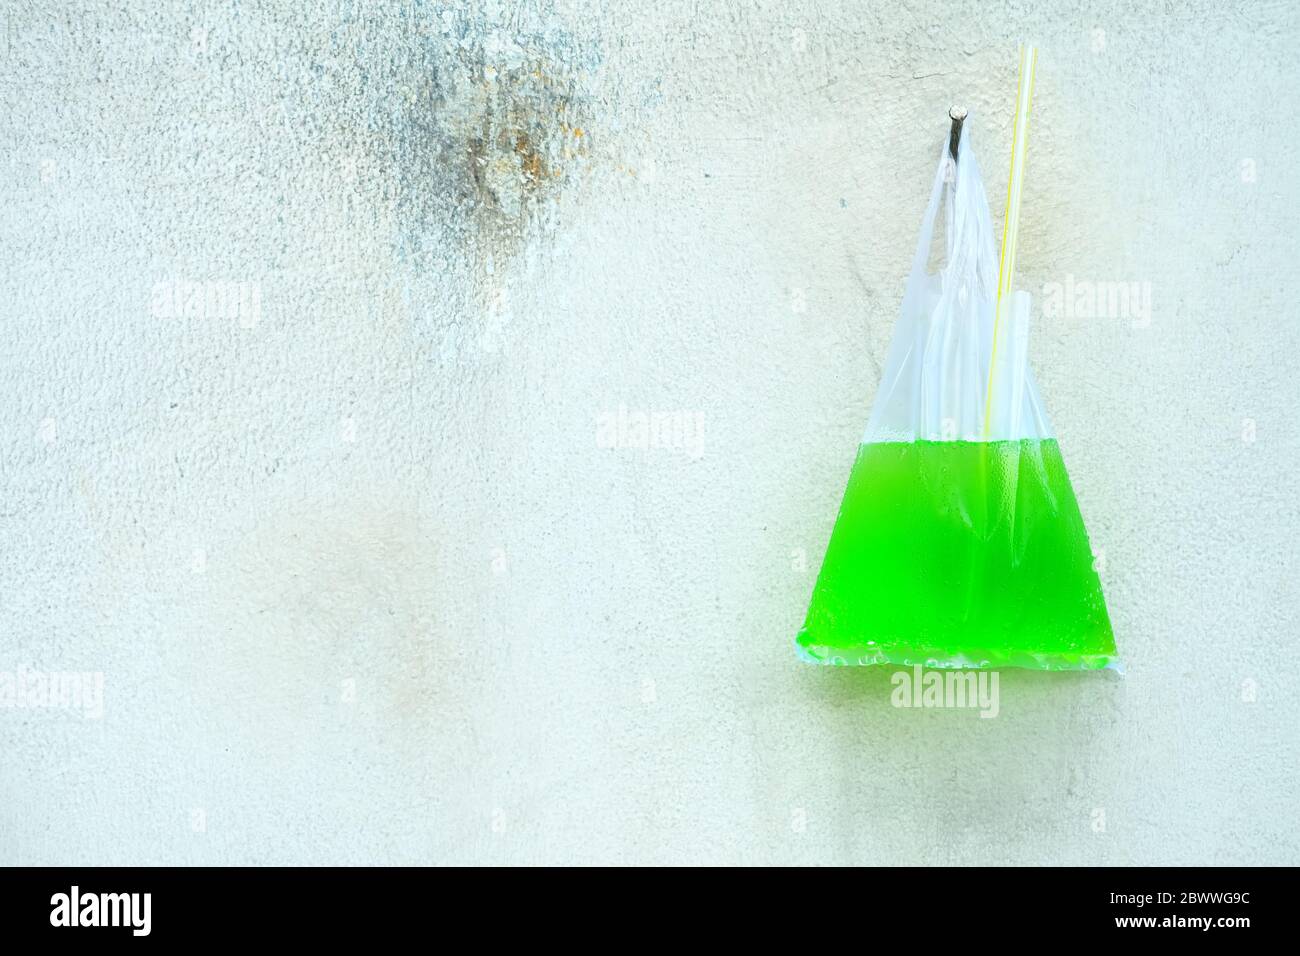 Grüne Soda mit Stroh in Plastiktüte Aufhängen an alte Betonwand  Stockfotografie - Alamy